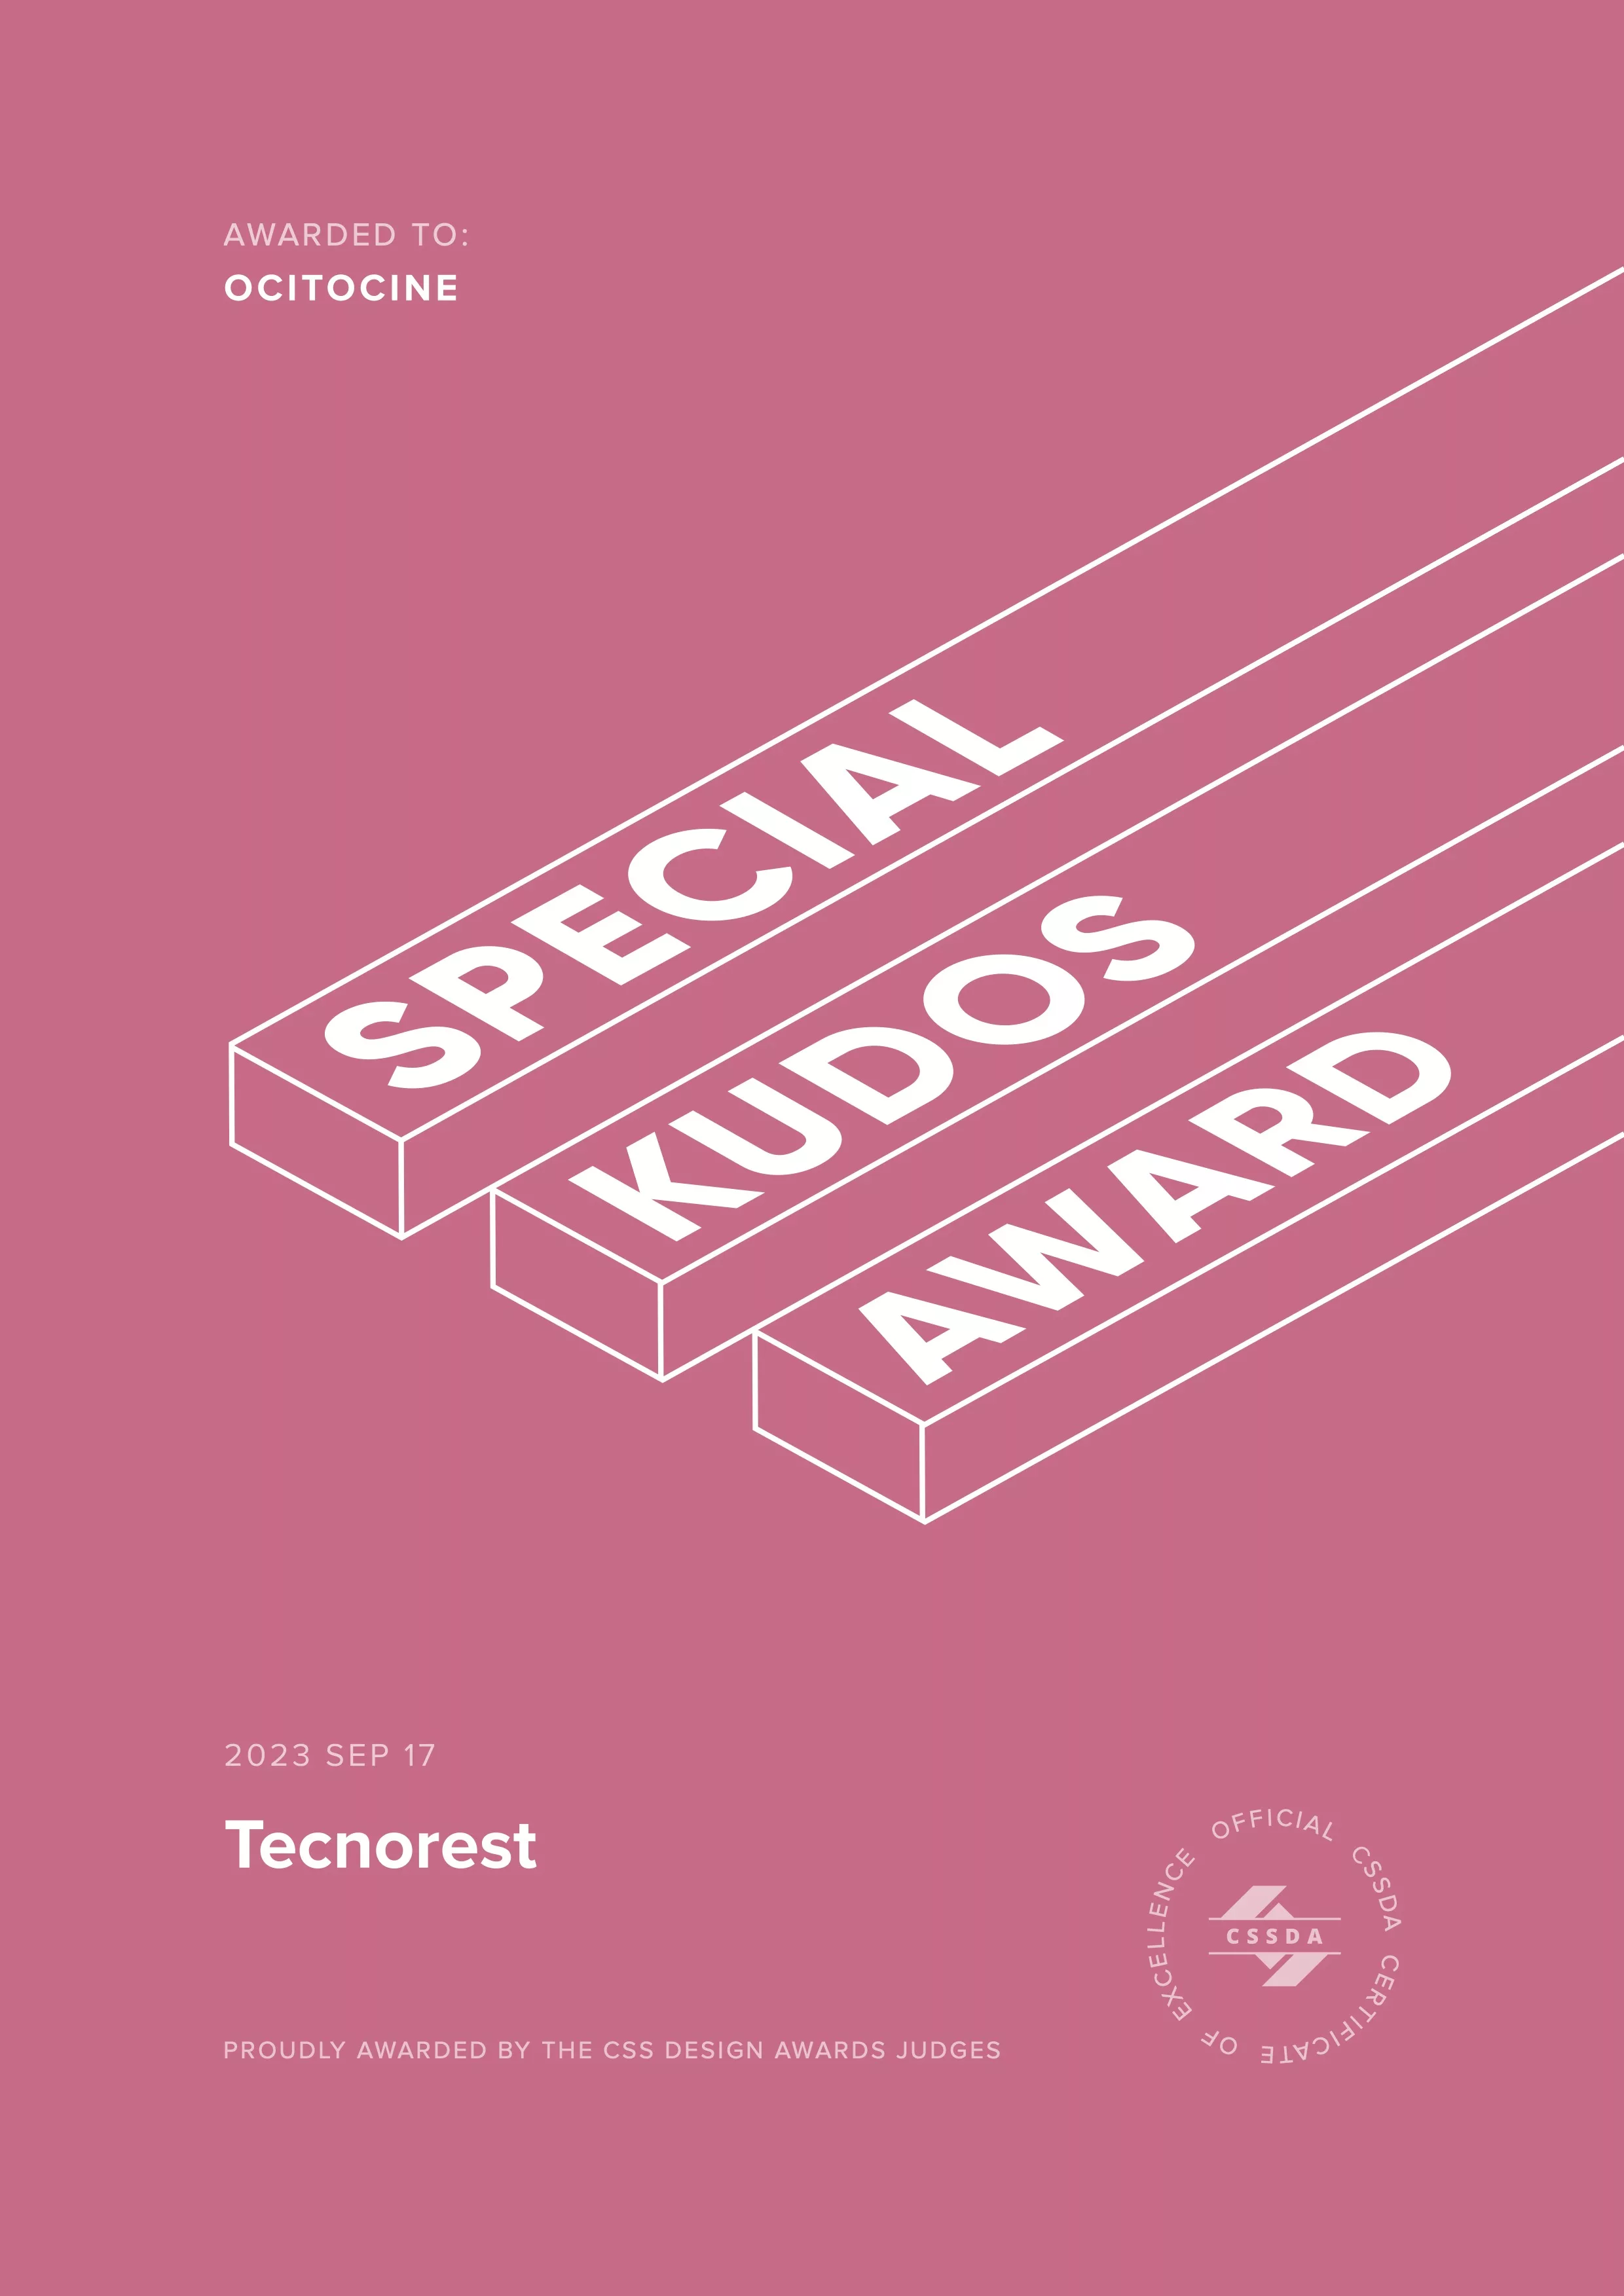 Ocitocine, agence créative web et branding, a remporté un prix "CSSDA Special Kudos Award" pour la réalisation du site web tecnorest.fr